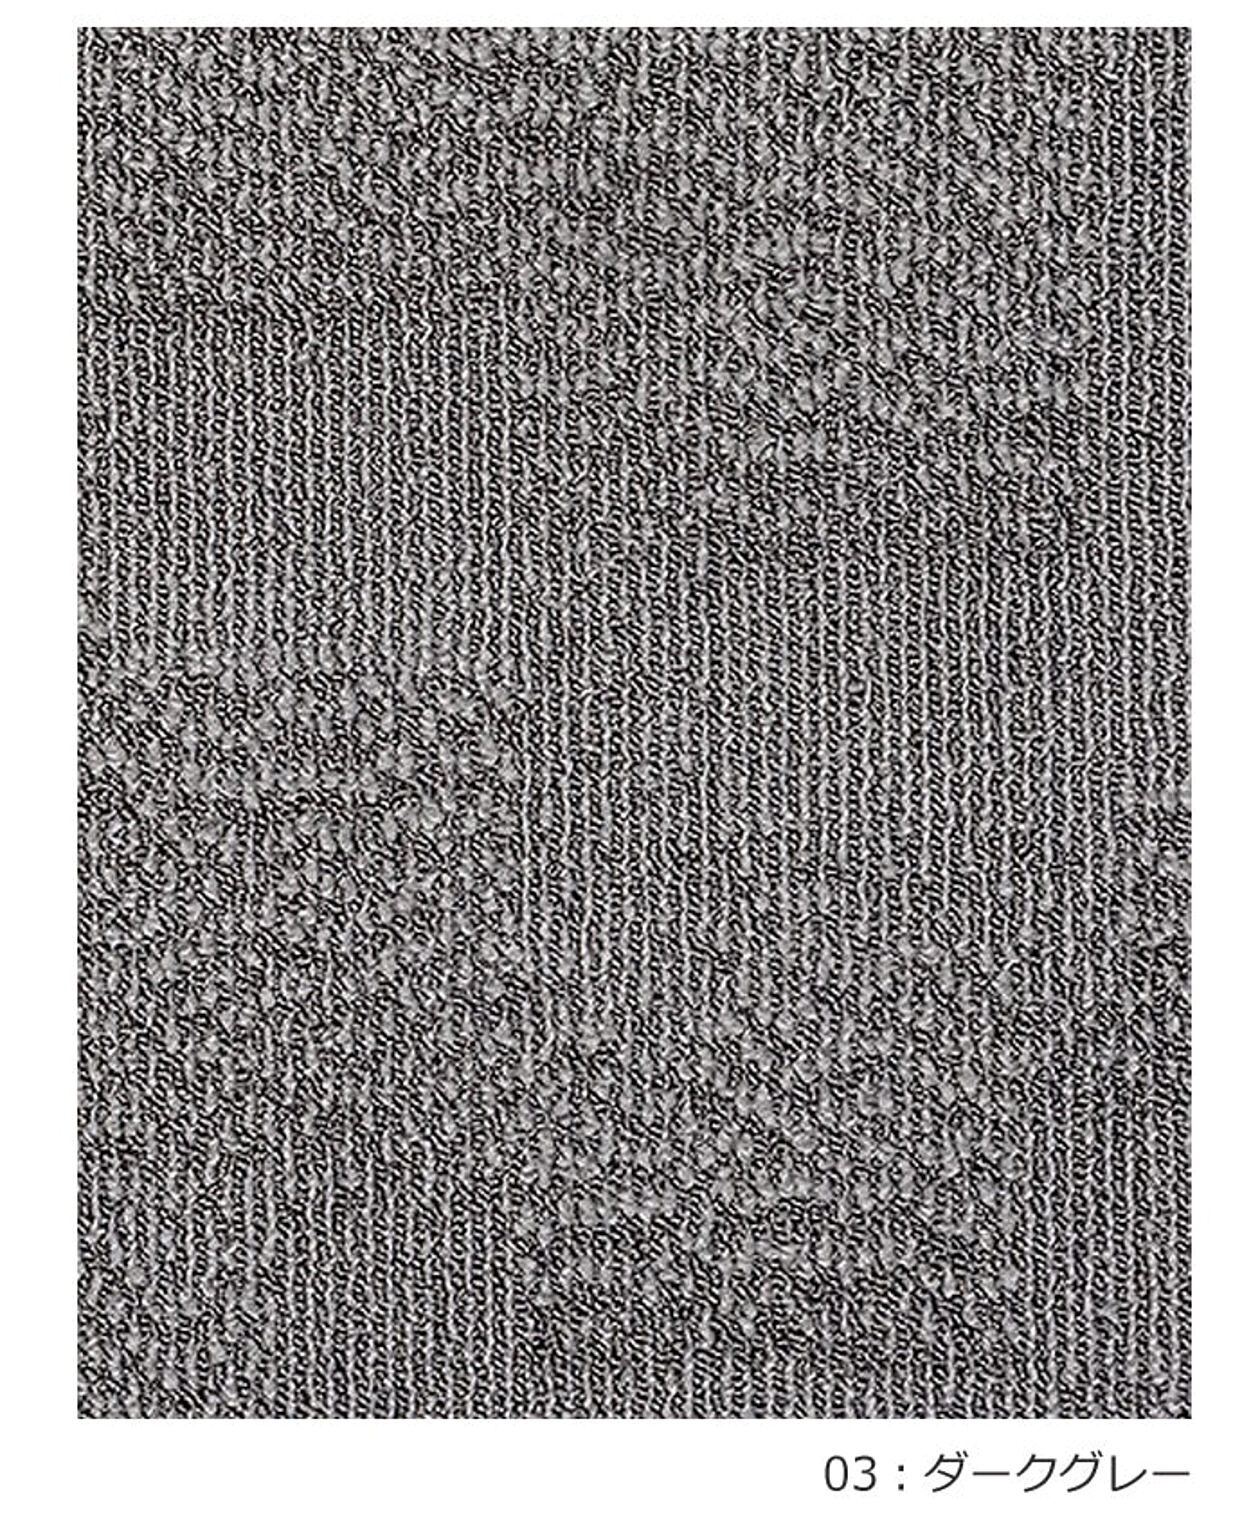 ラグ ラグマット 絨毯 日本製 カーペット prevell プレーベル ロルカ 江戸間8畳 約352×352cm 北欧 デザイン 防ダニ 抗菌 8帖 8畳 八畳 引っ越し 新生活